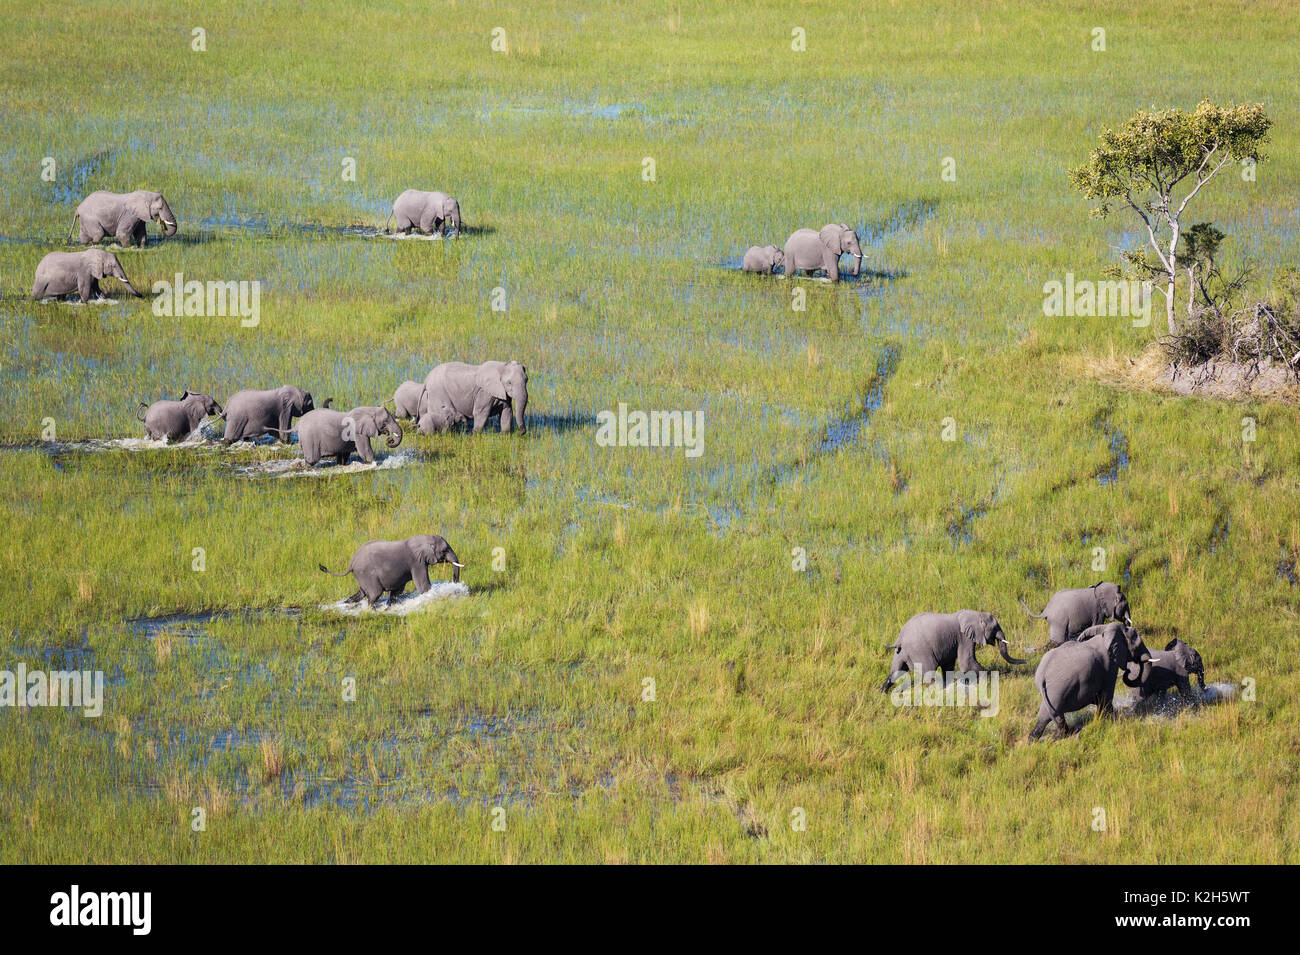 Afrikanischer Elefant (Loxodonta africana), die Tierzucht Herde, Roaming in einem Süßwasser-Sumpf, Luftaufnahme, Okavango Delta, Moremi Game Reserve, Botswana Stockfoto